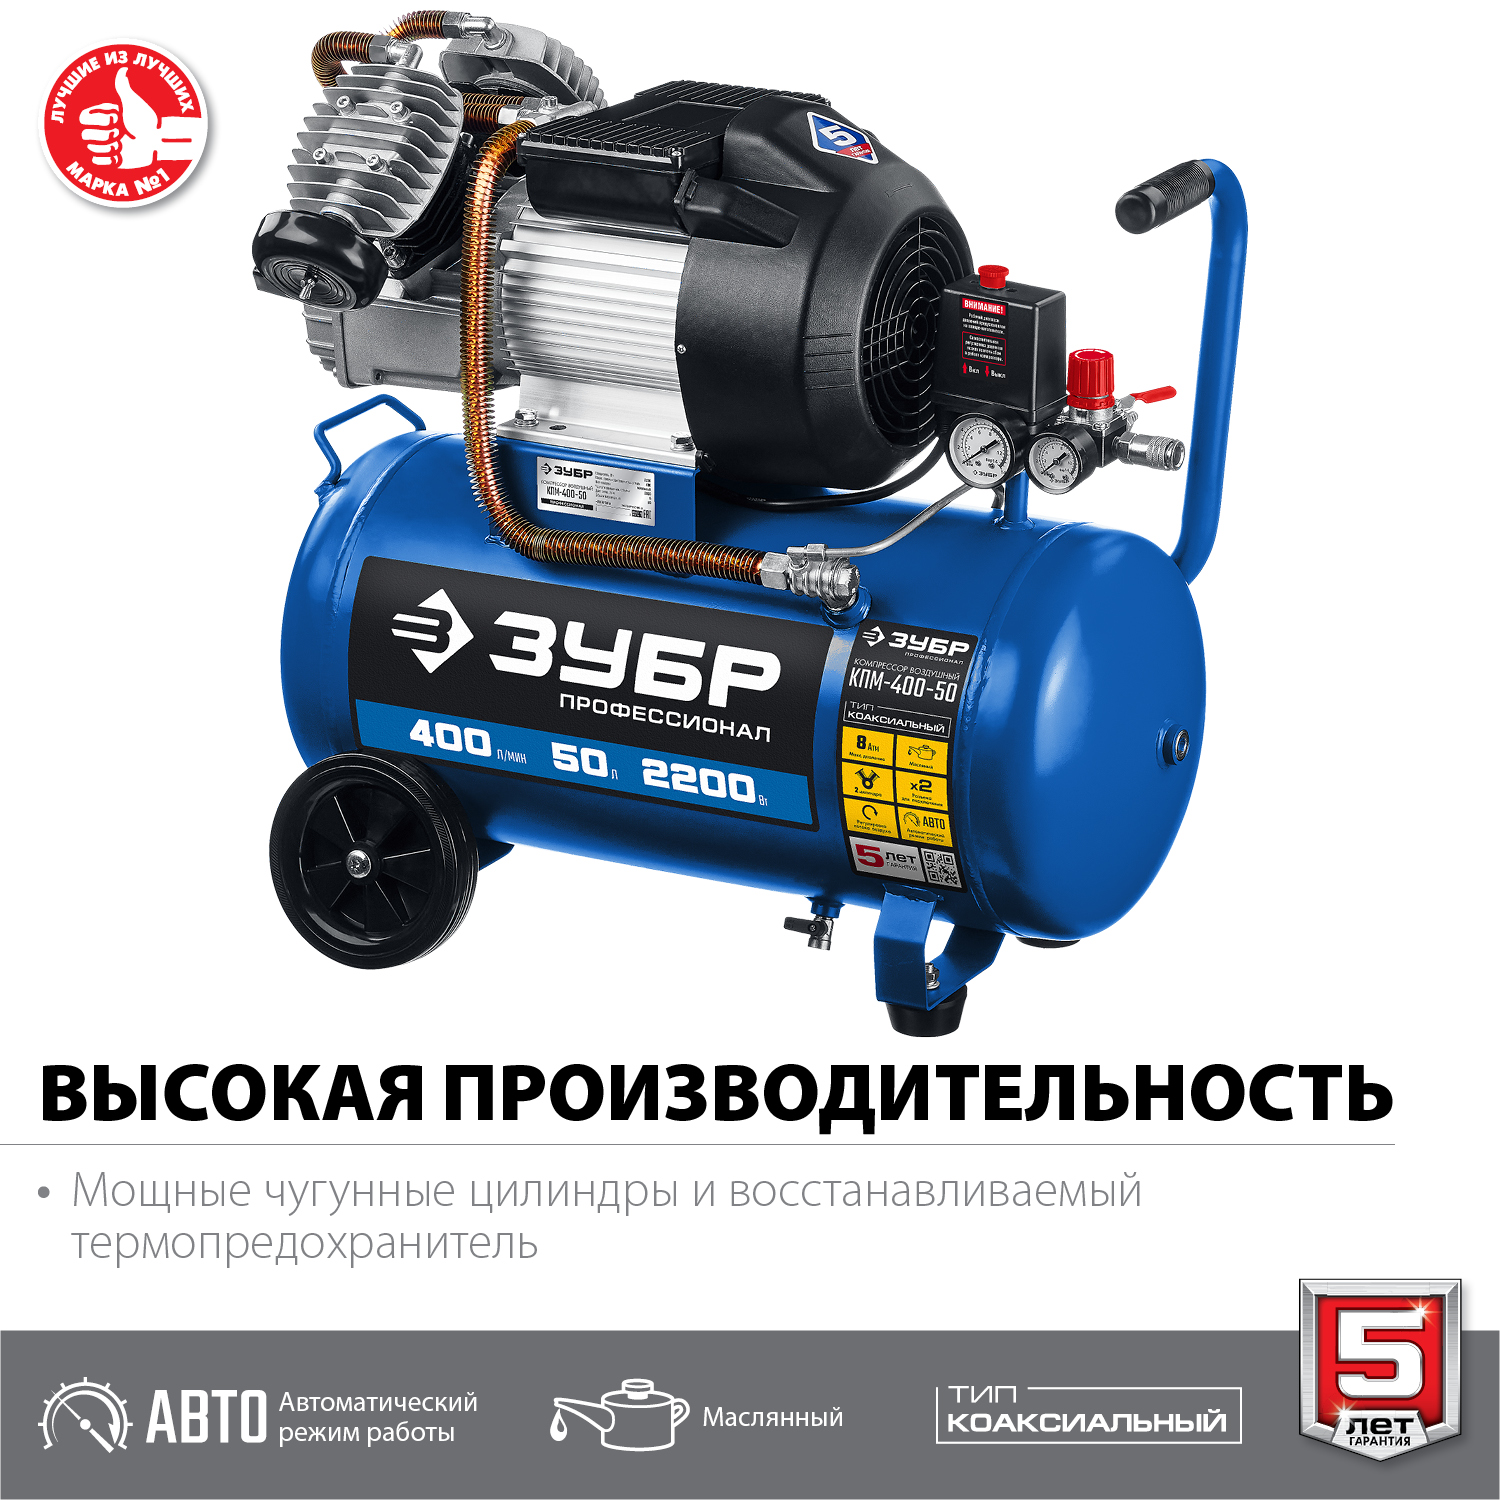 ЗУБР 400 л/мин, 50 л, 2200 Вт, масляный компрессор, Профессионал (КПМ-400-50)